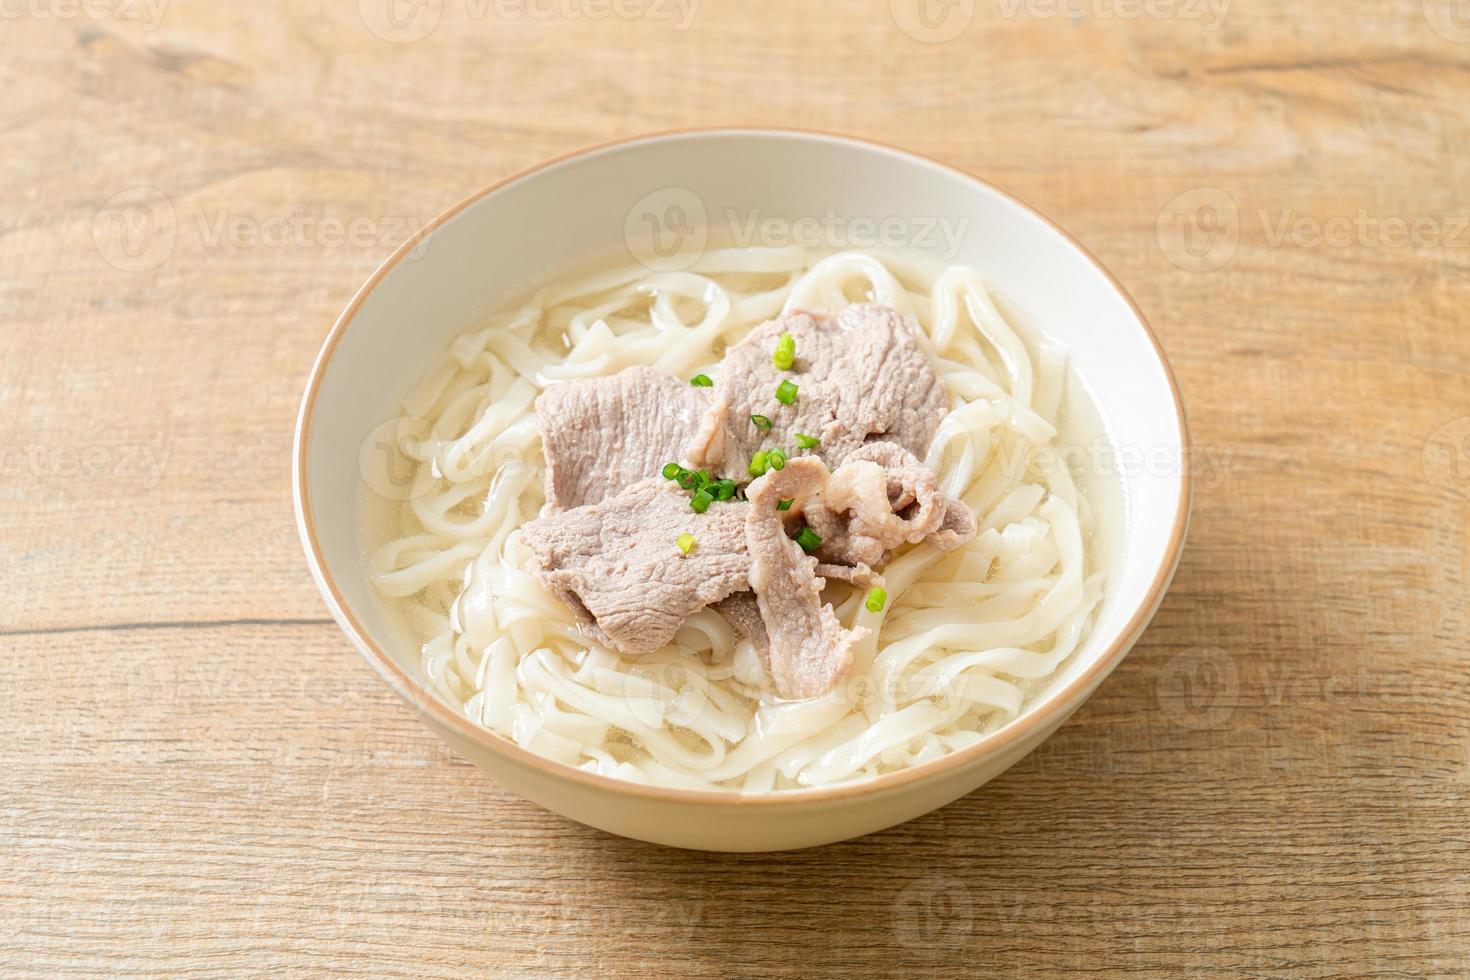 zelfgemaakte udon ramen noodles met varkensvlees in heldere soep foto